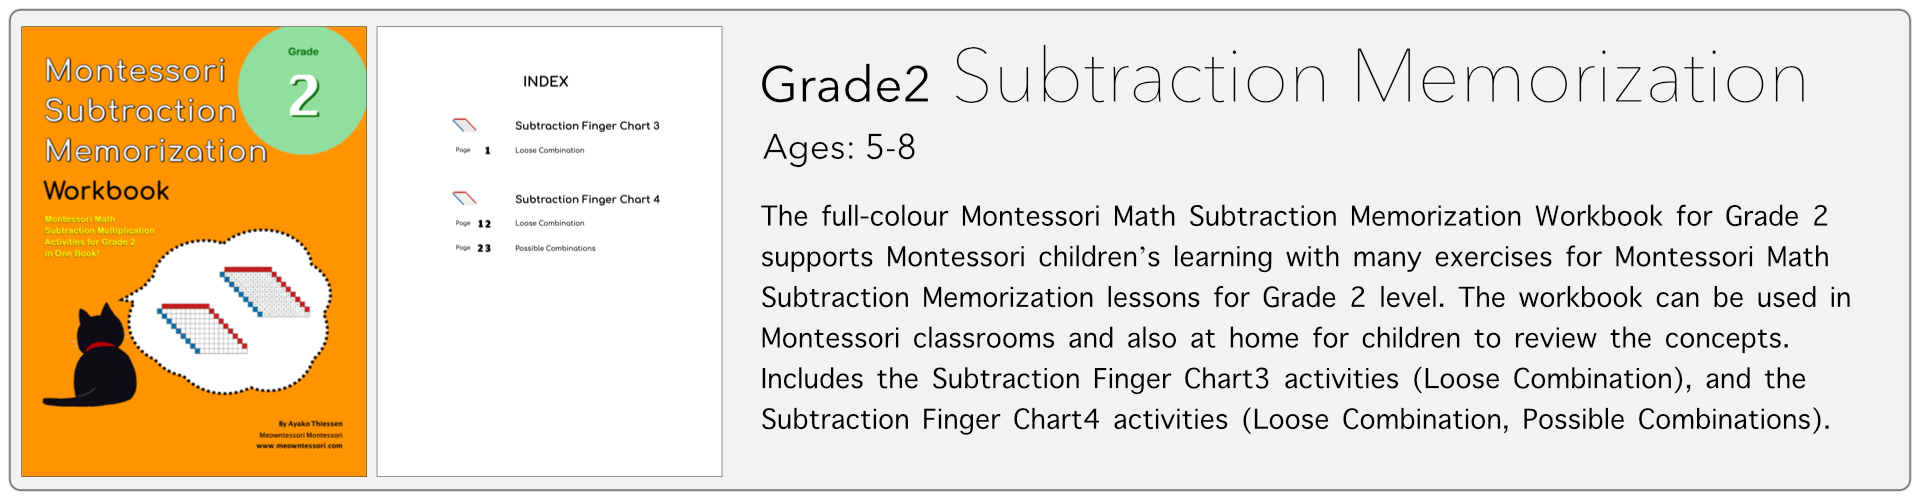 grade2 subtraction memorization